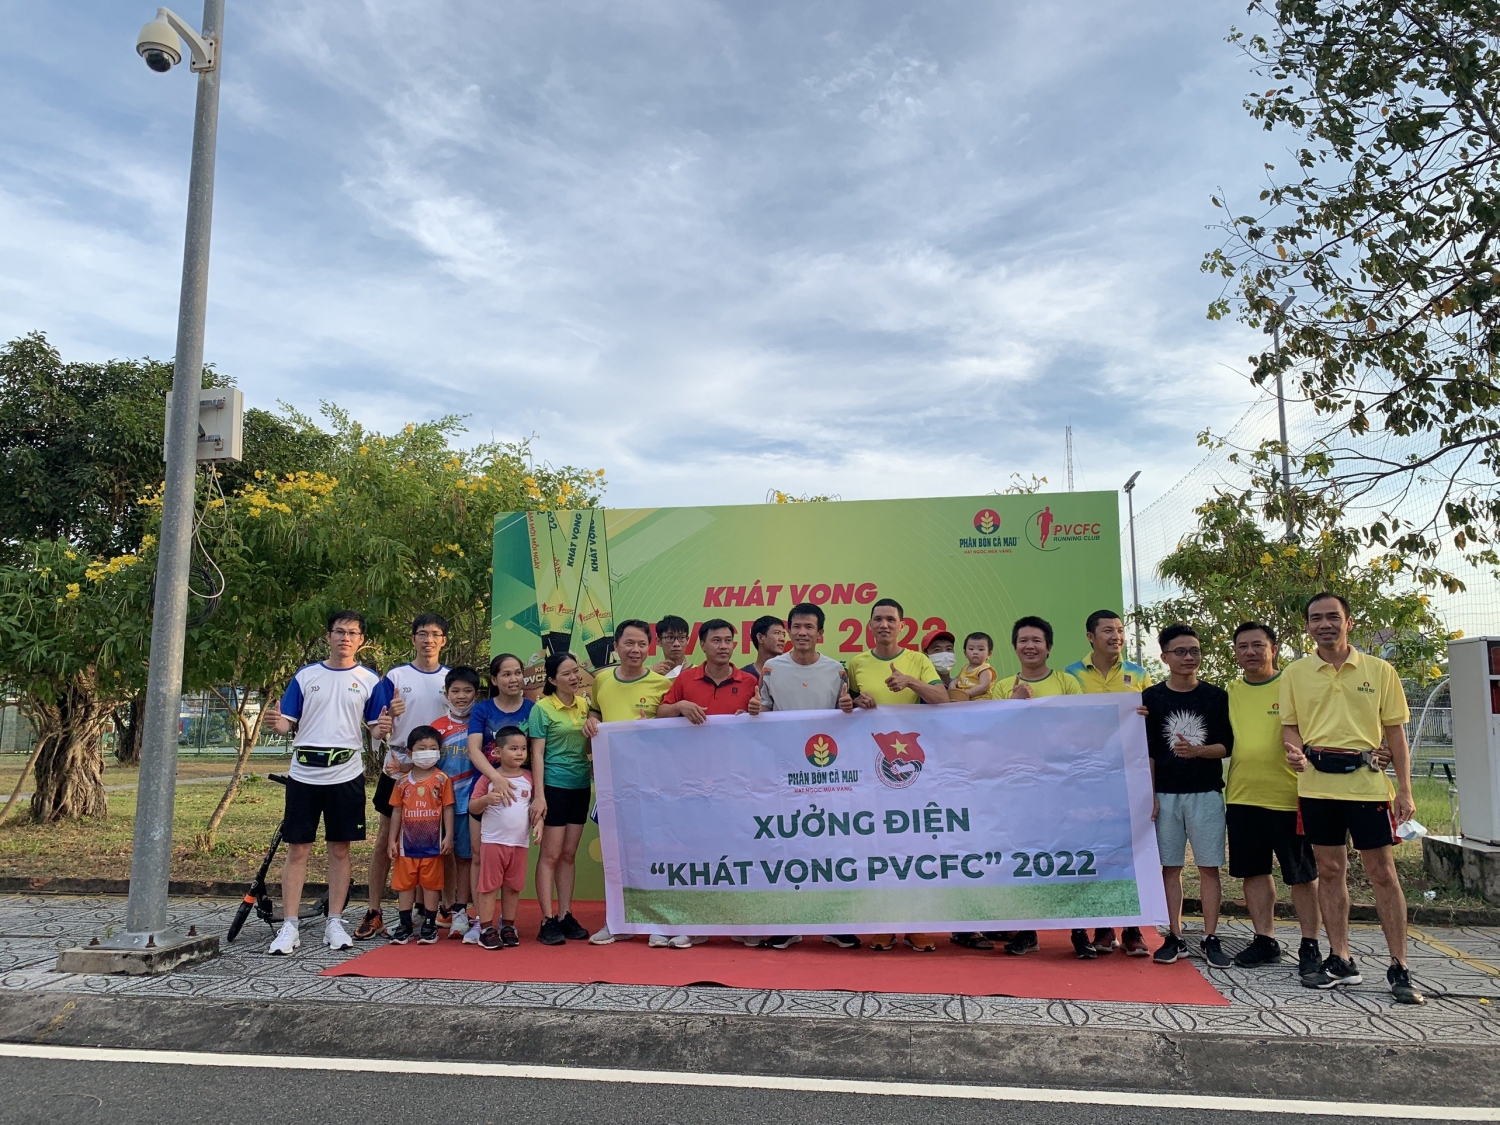 “Khát vọng - PVCFC 2022”: Cùng nhau vượt lên chính mình